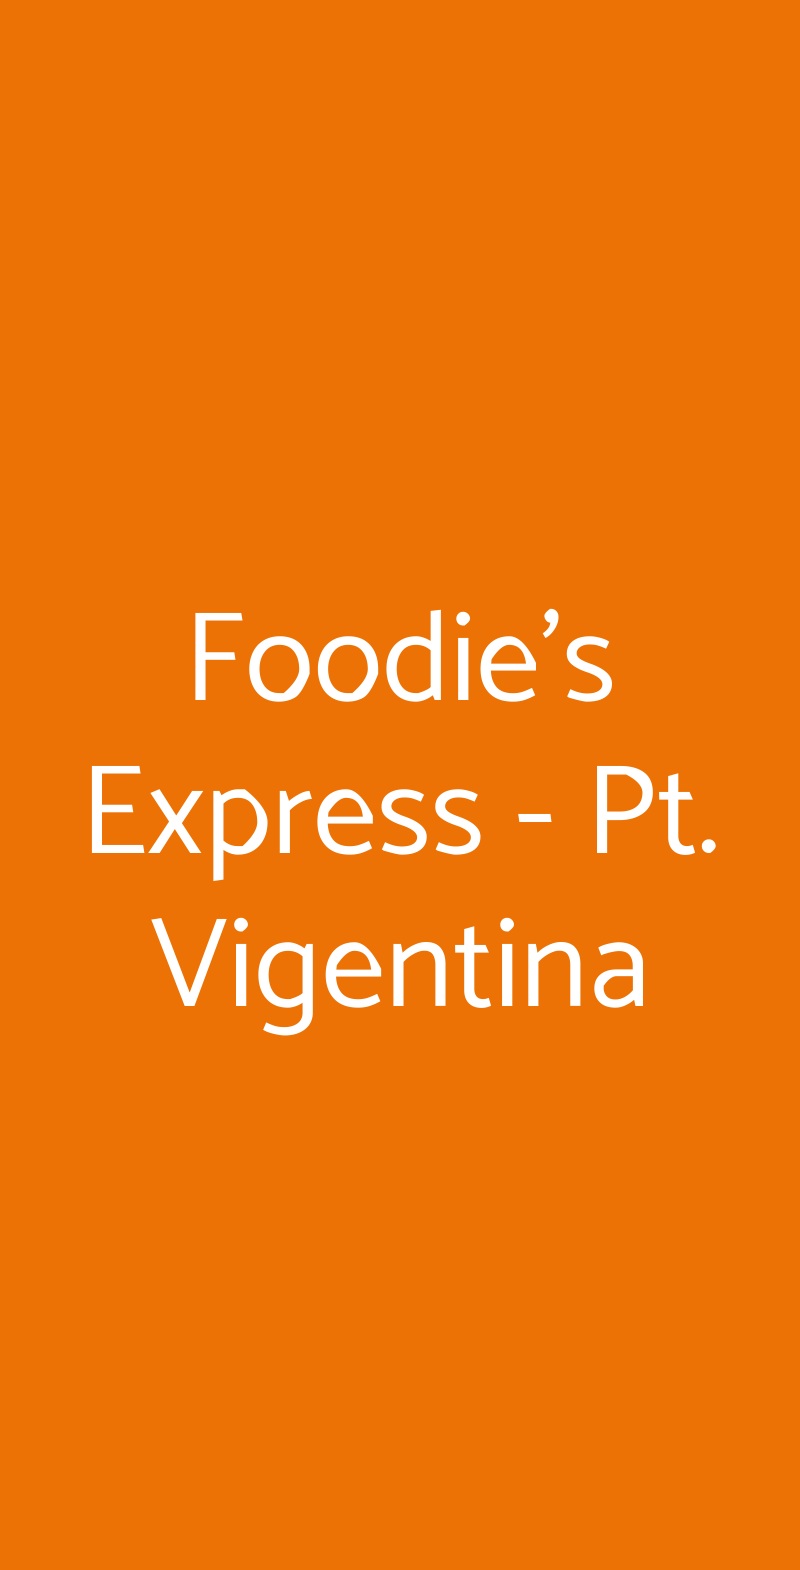 Foodie's Express - Pt. Vigentina Milano menù 1 pagina